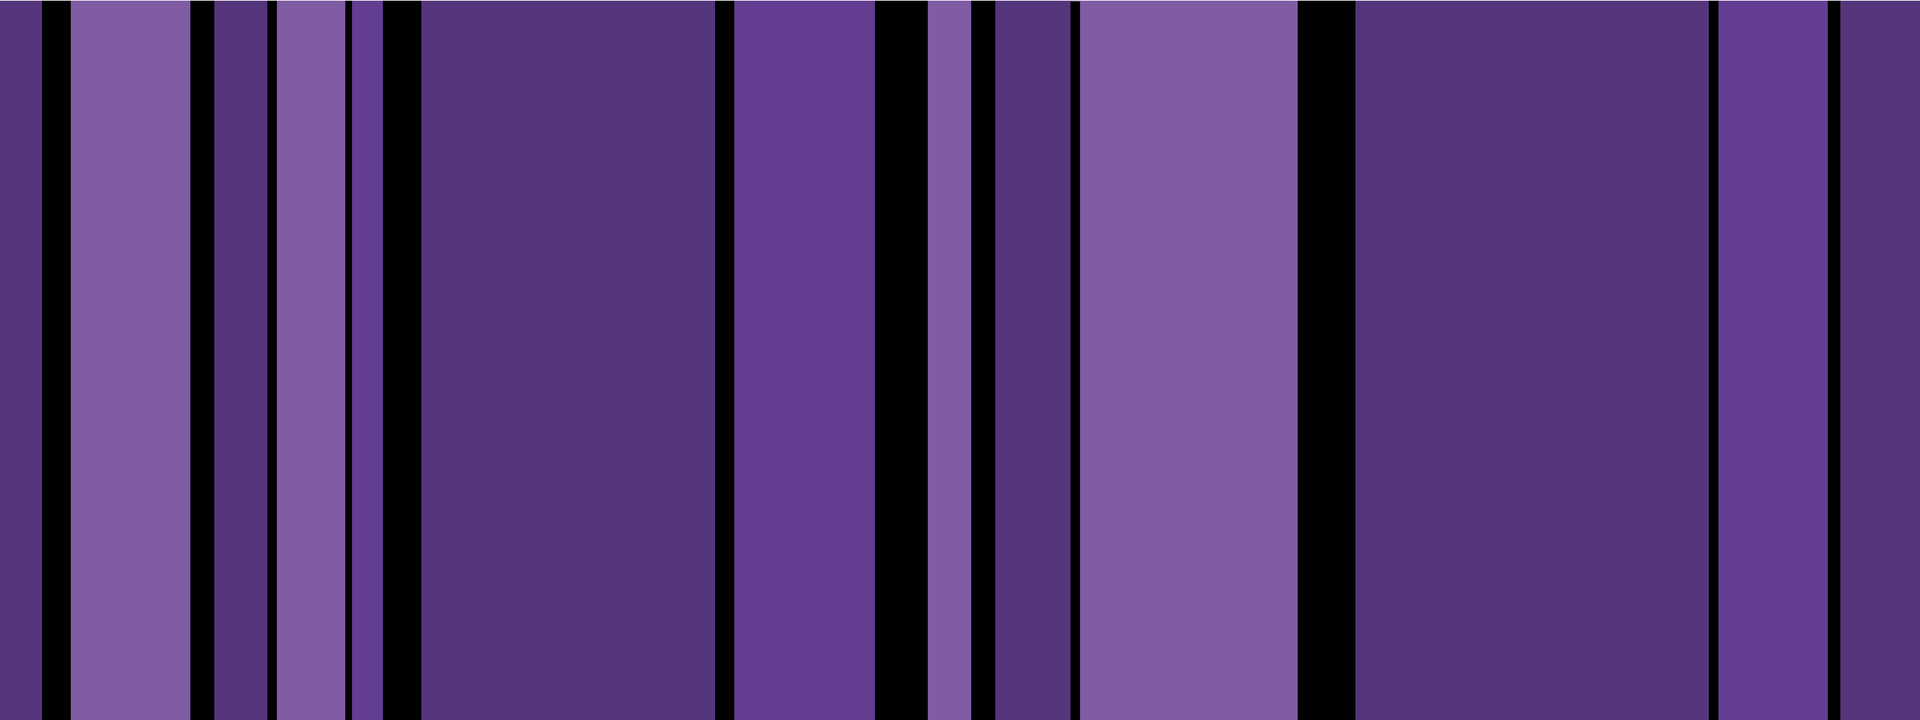 Vertikale Streifen in verschiedenen Violetttönen. Unterbrochen von unterschiedlich breiten schwarzen Linien.